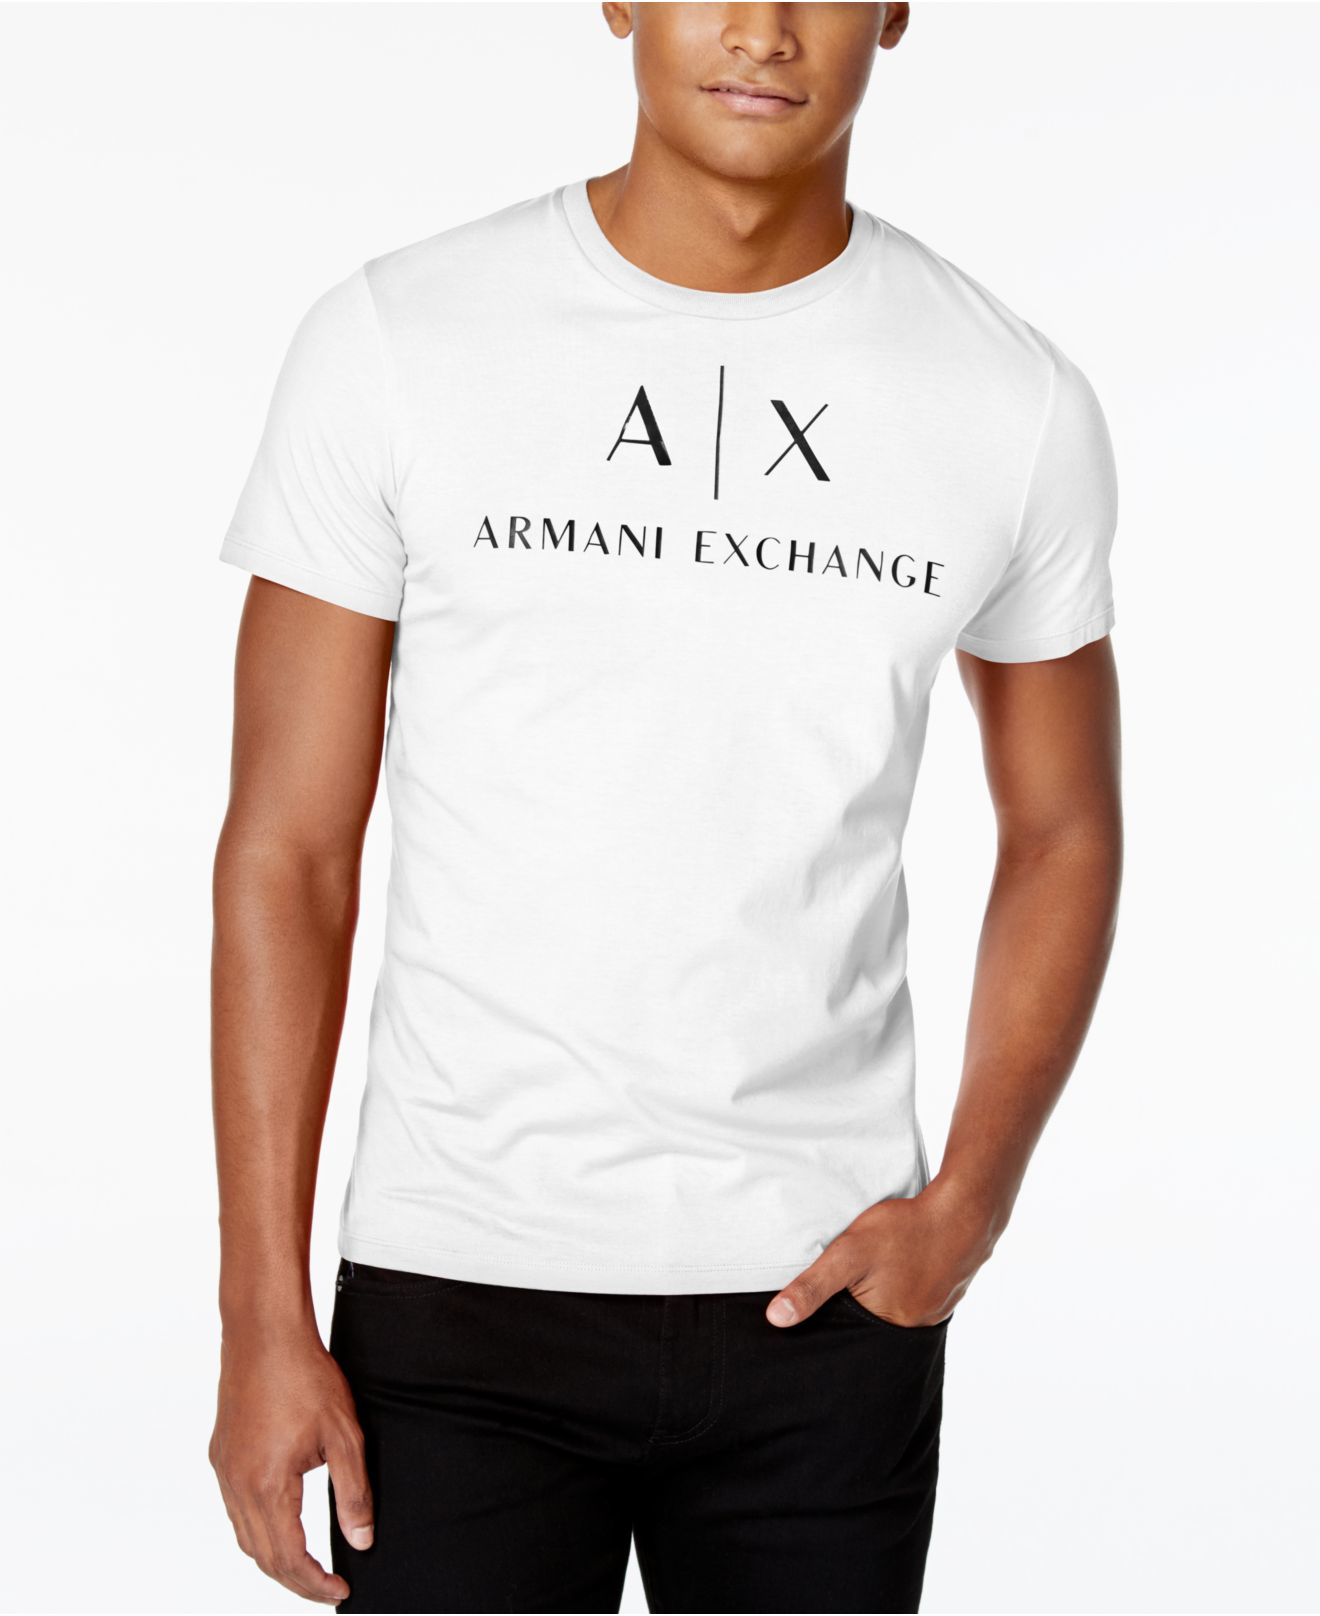 Armani exchange t shirt mens sale Clinton H&m love stories swim